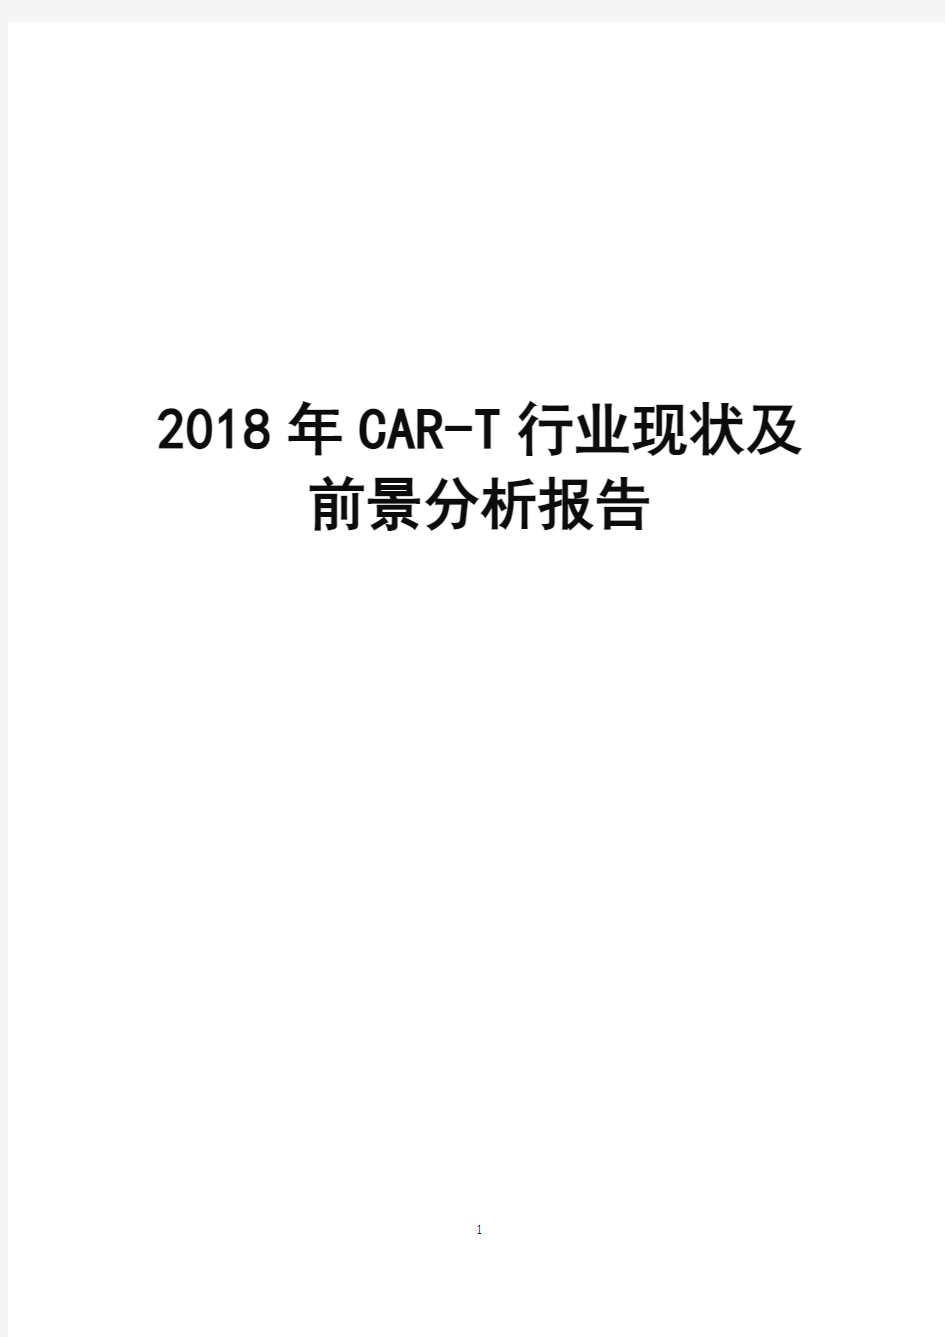 2018年CAR-T行业现状及前景分析报告